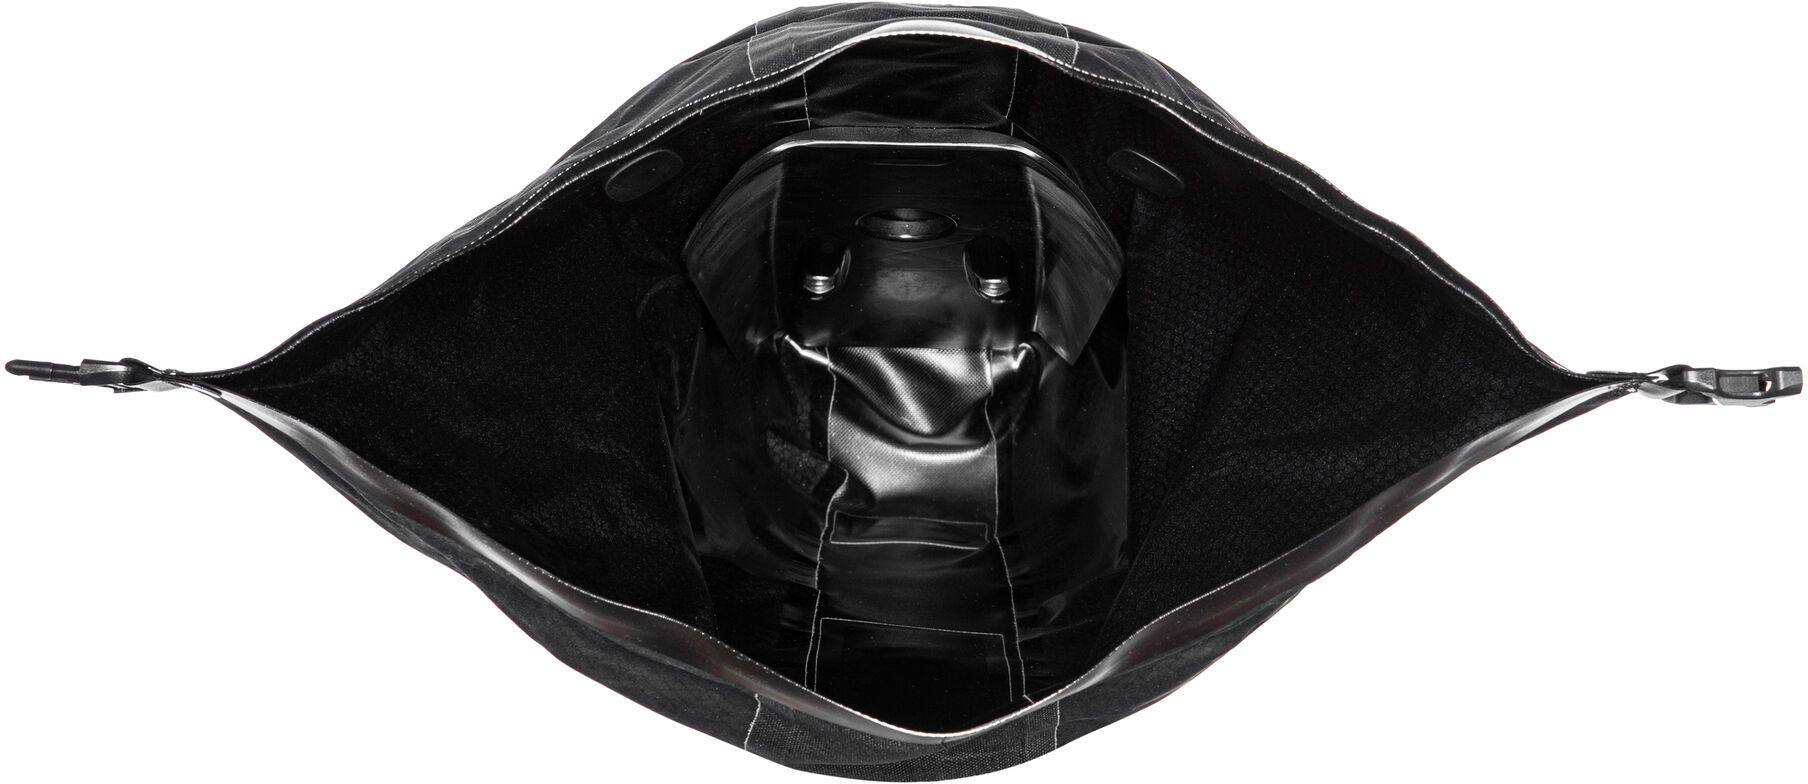 Ortlieb Seat-Pack QR Black